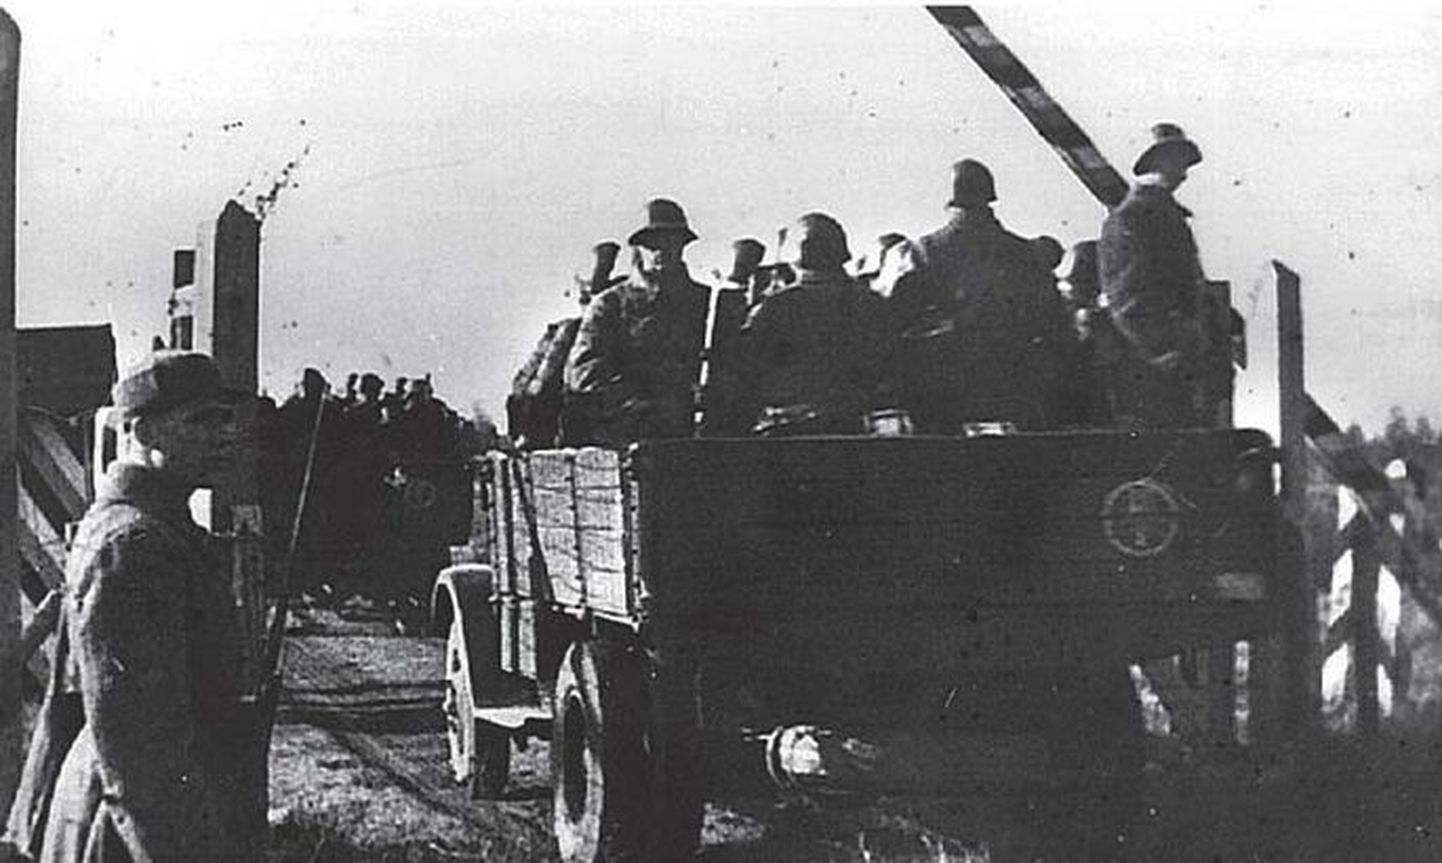 TERE TULEMAST: Nõukogude väed 1939. aastal Eestisse saabumas.